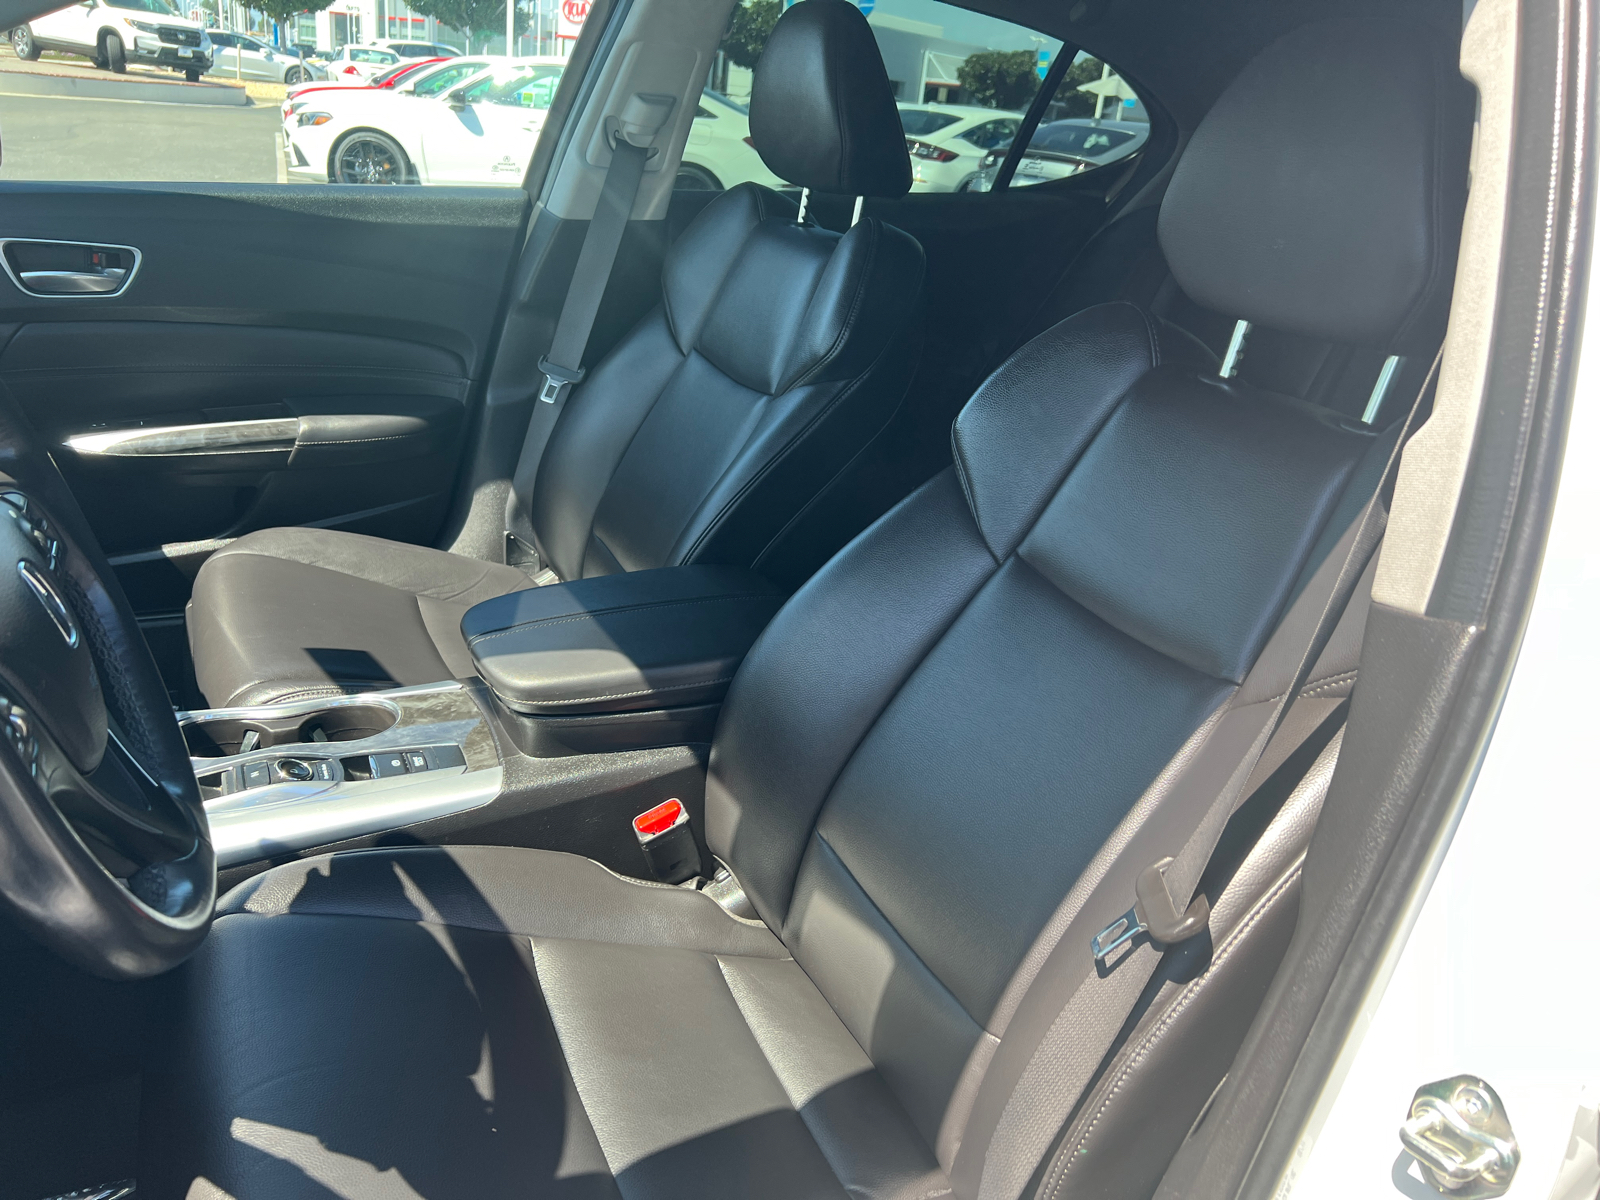 2018 Acura TLX 3.5L V6 9